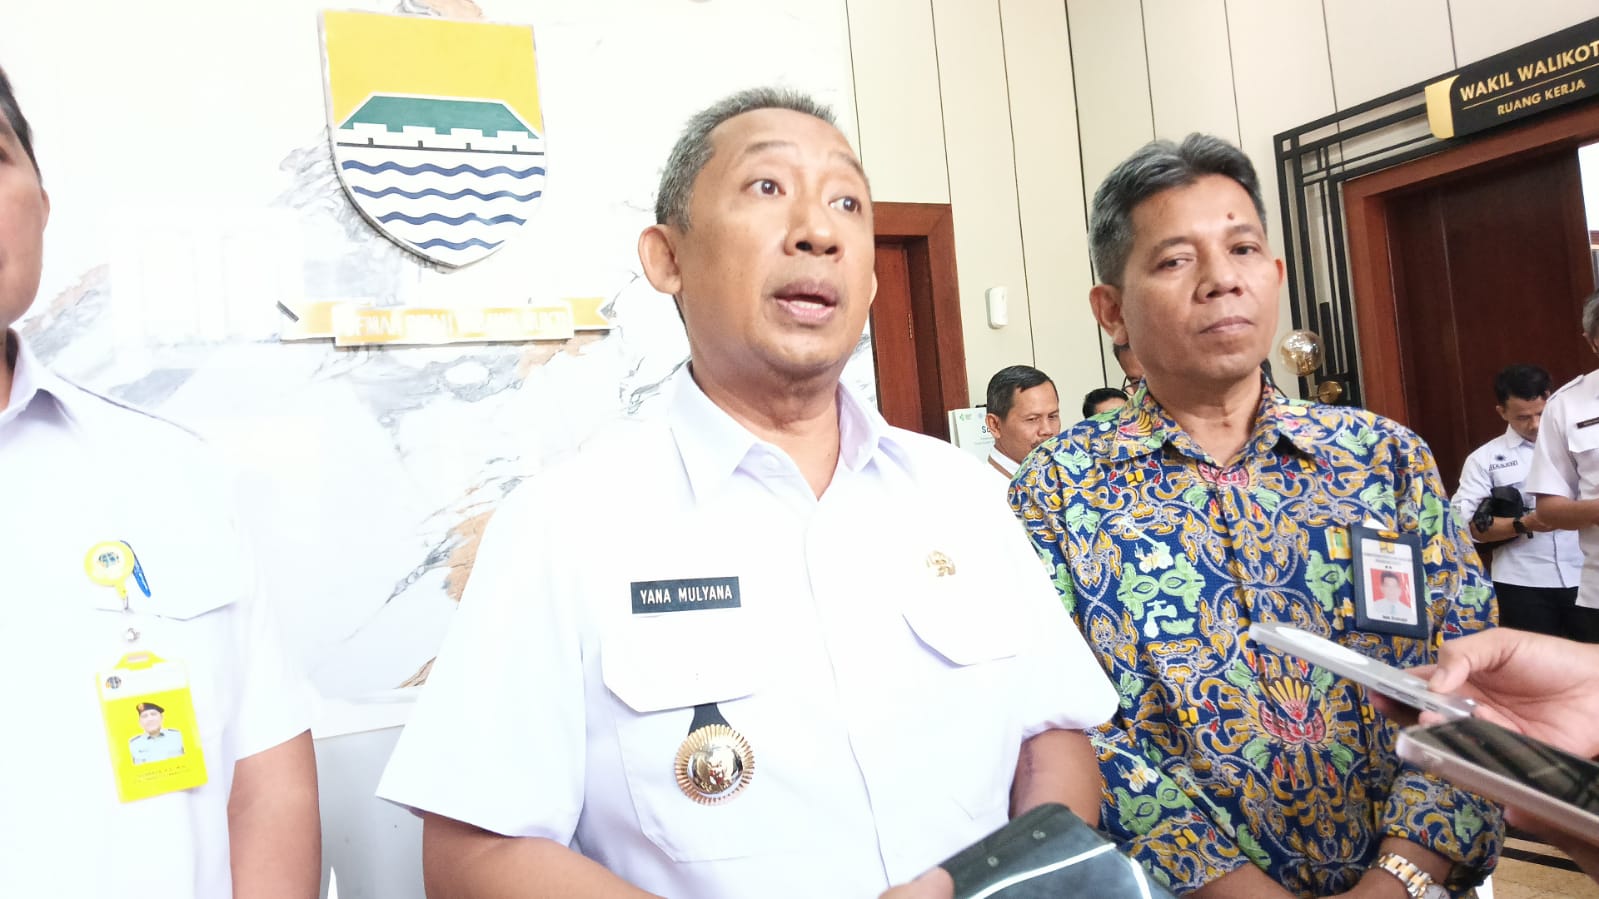 Wali Kota Bandung Yana Mulyana Resmi Serahkan Lahan di Gedebage untuk Dibangun Tol Getaci